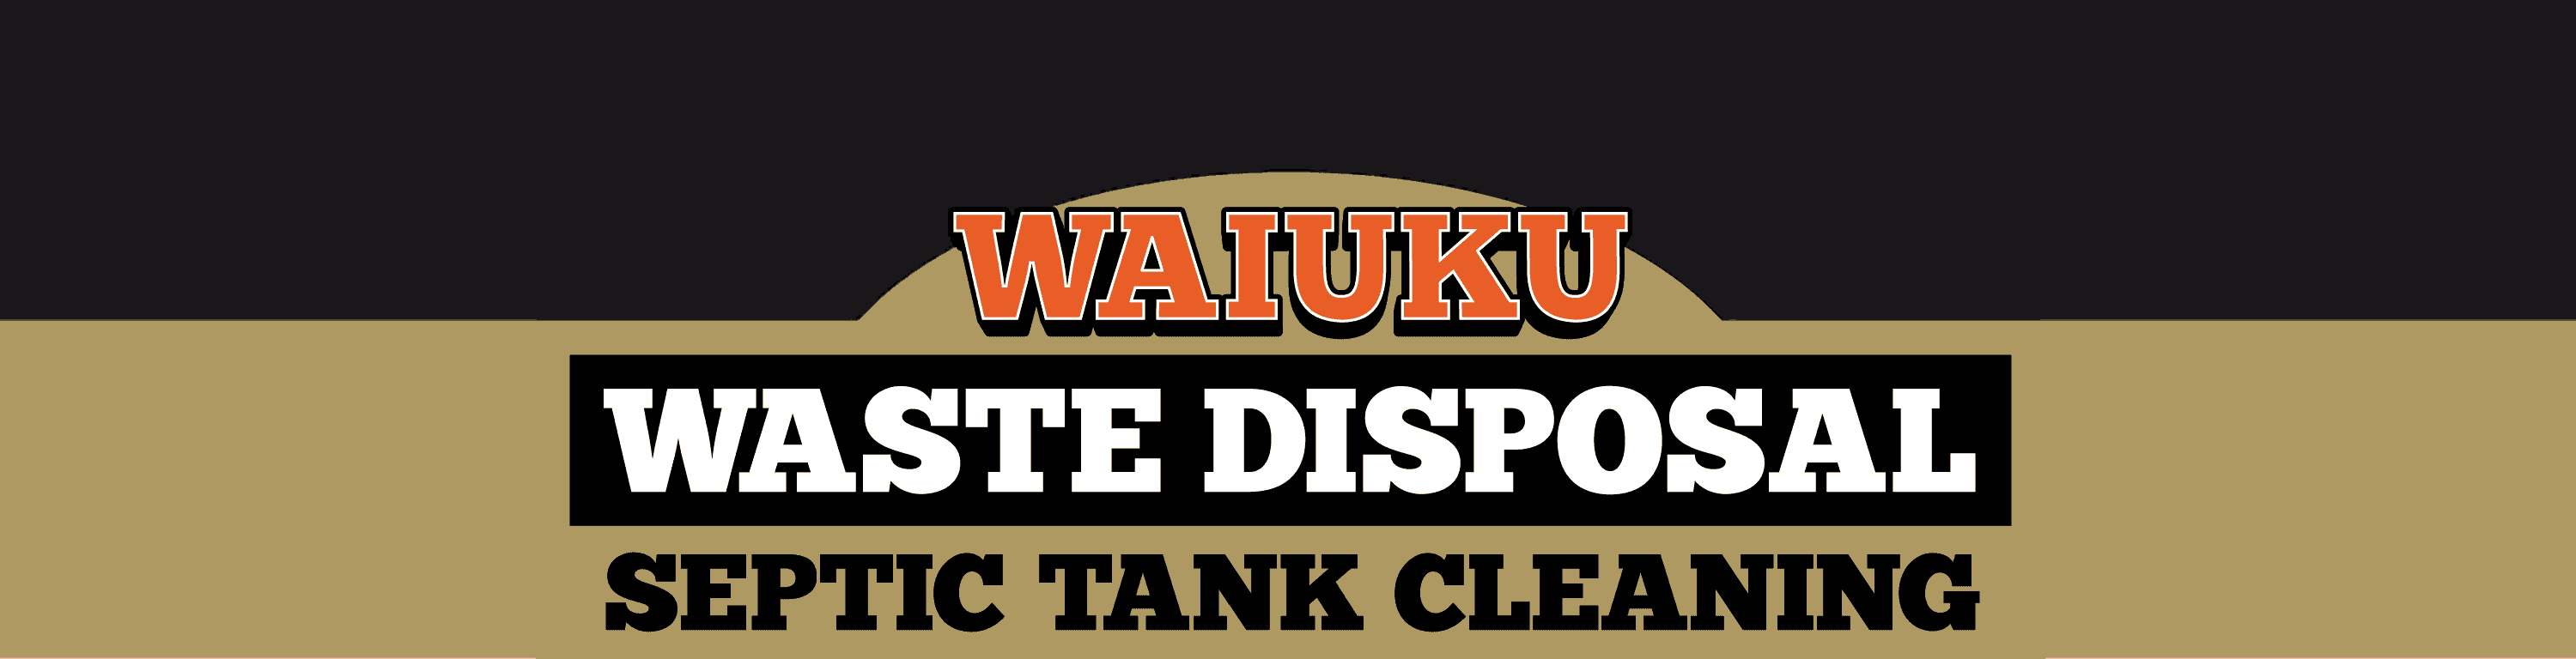 waiuku waste disposal